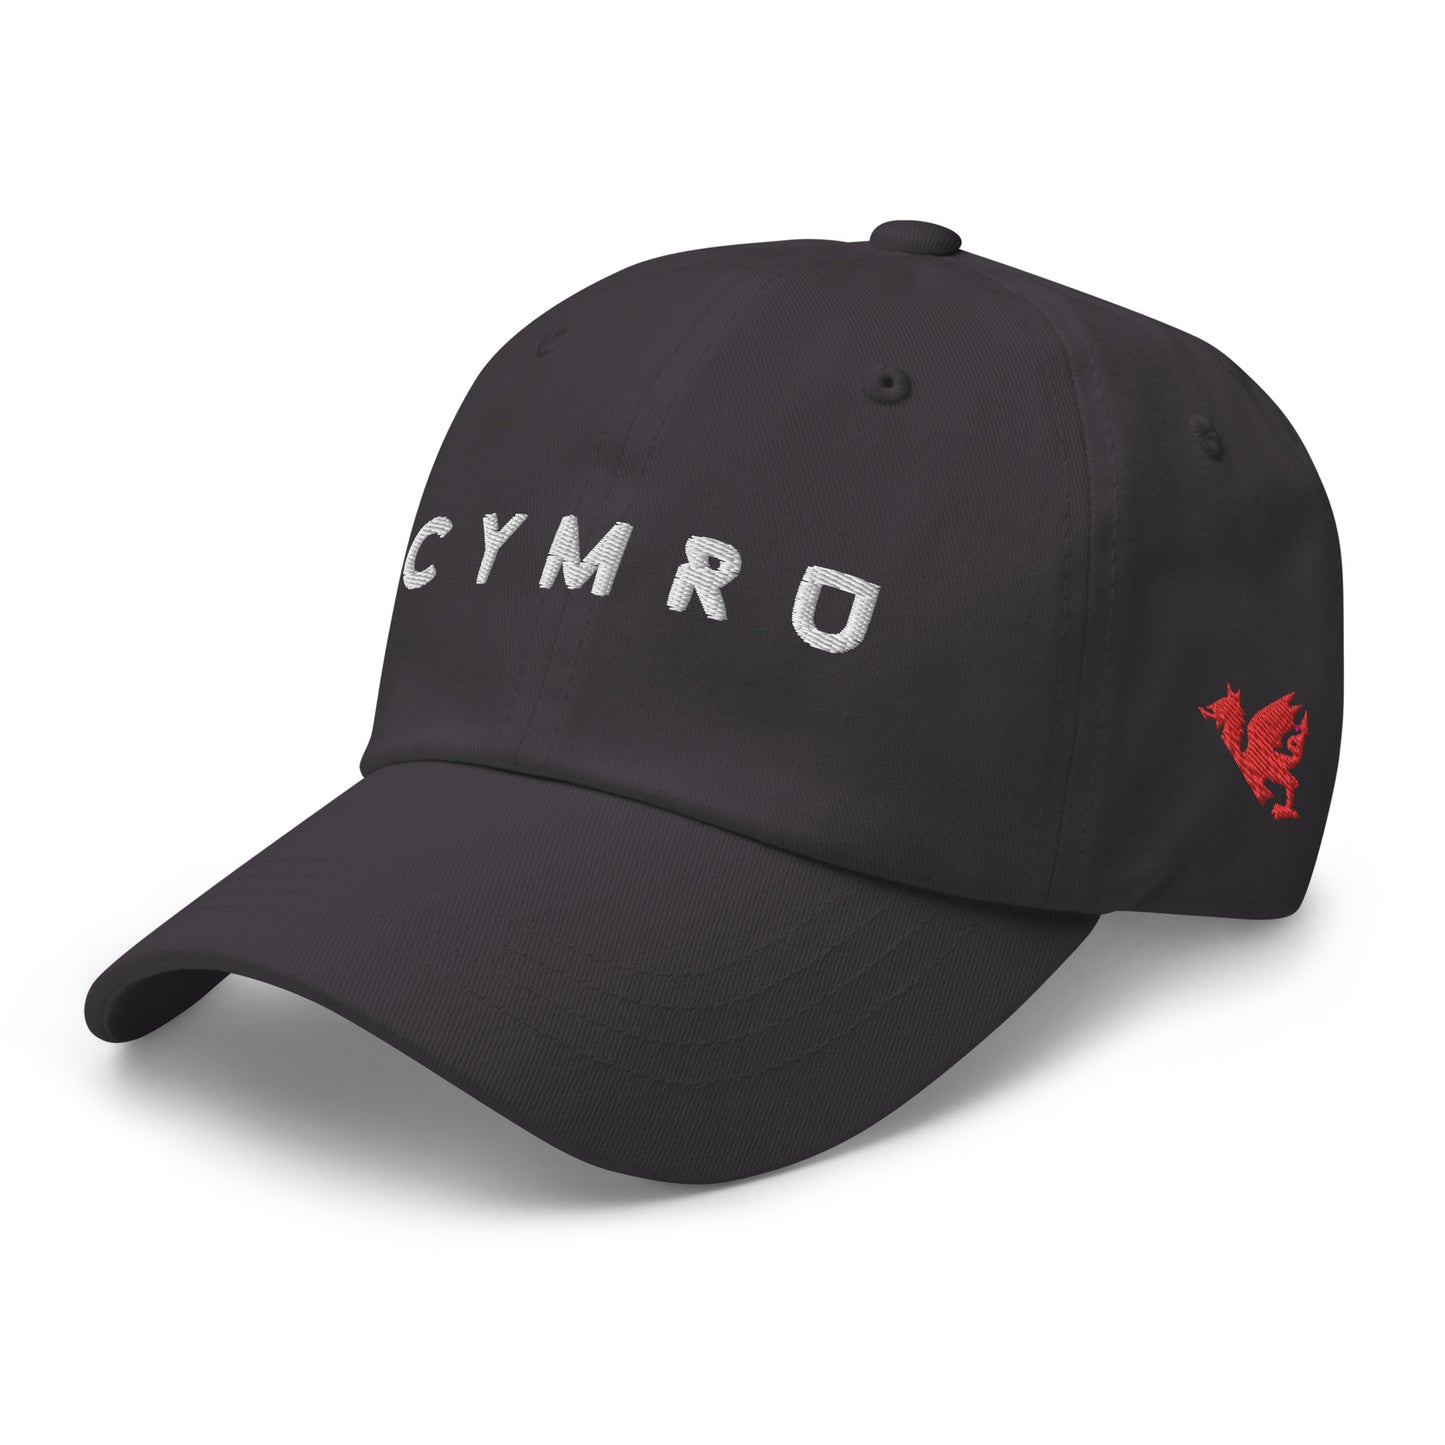 Cymru - Dad hat